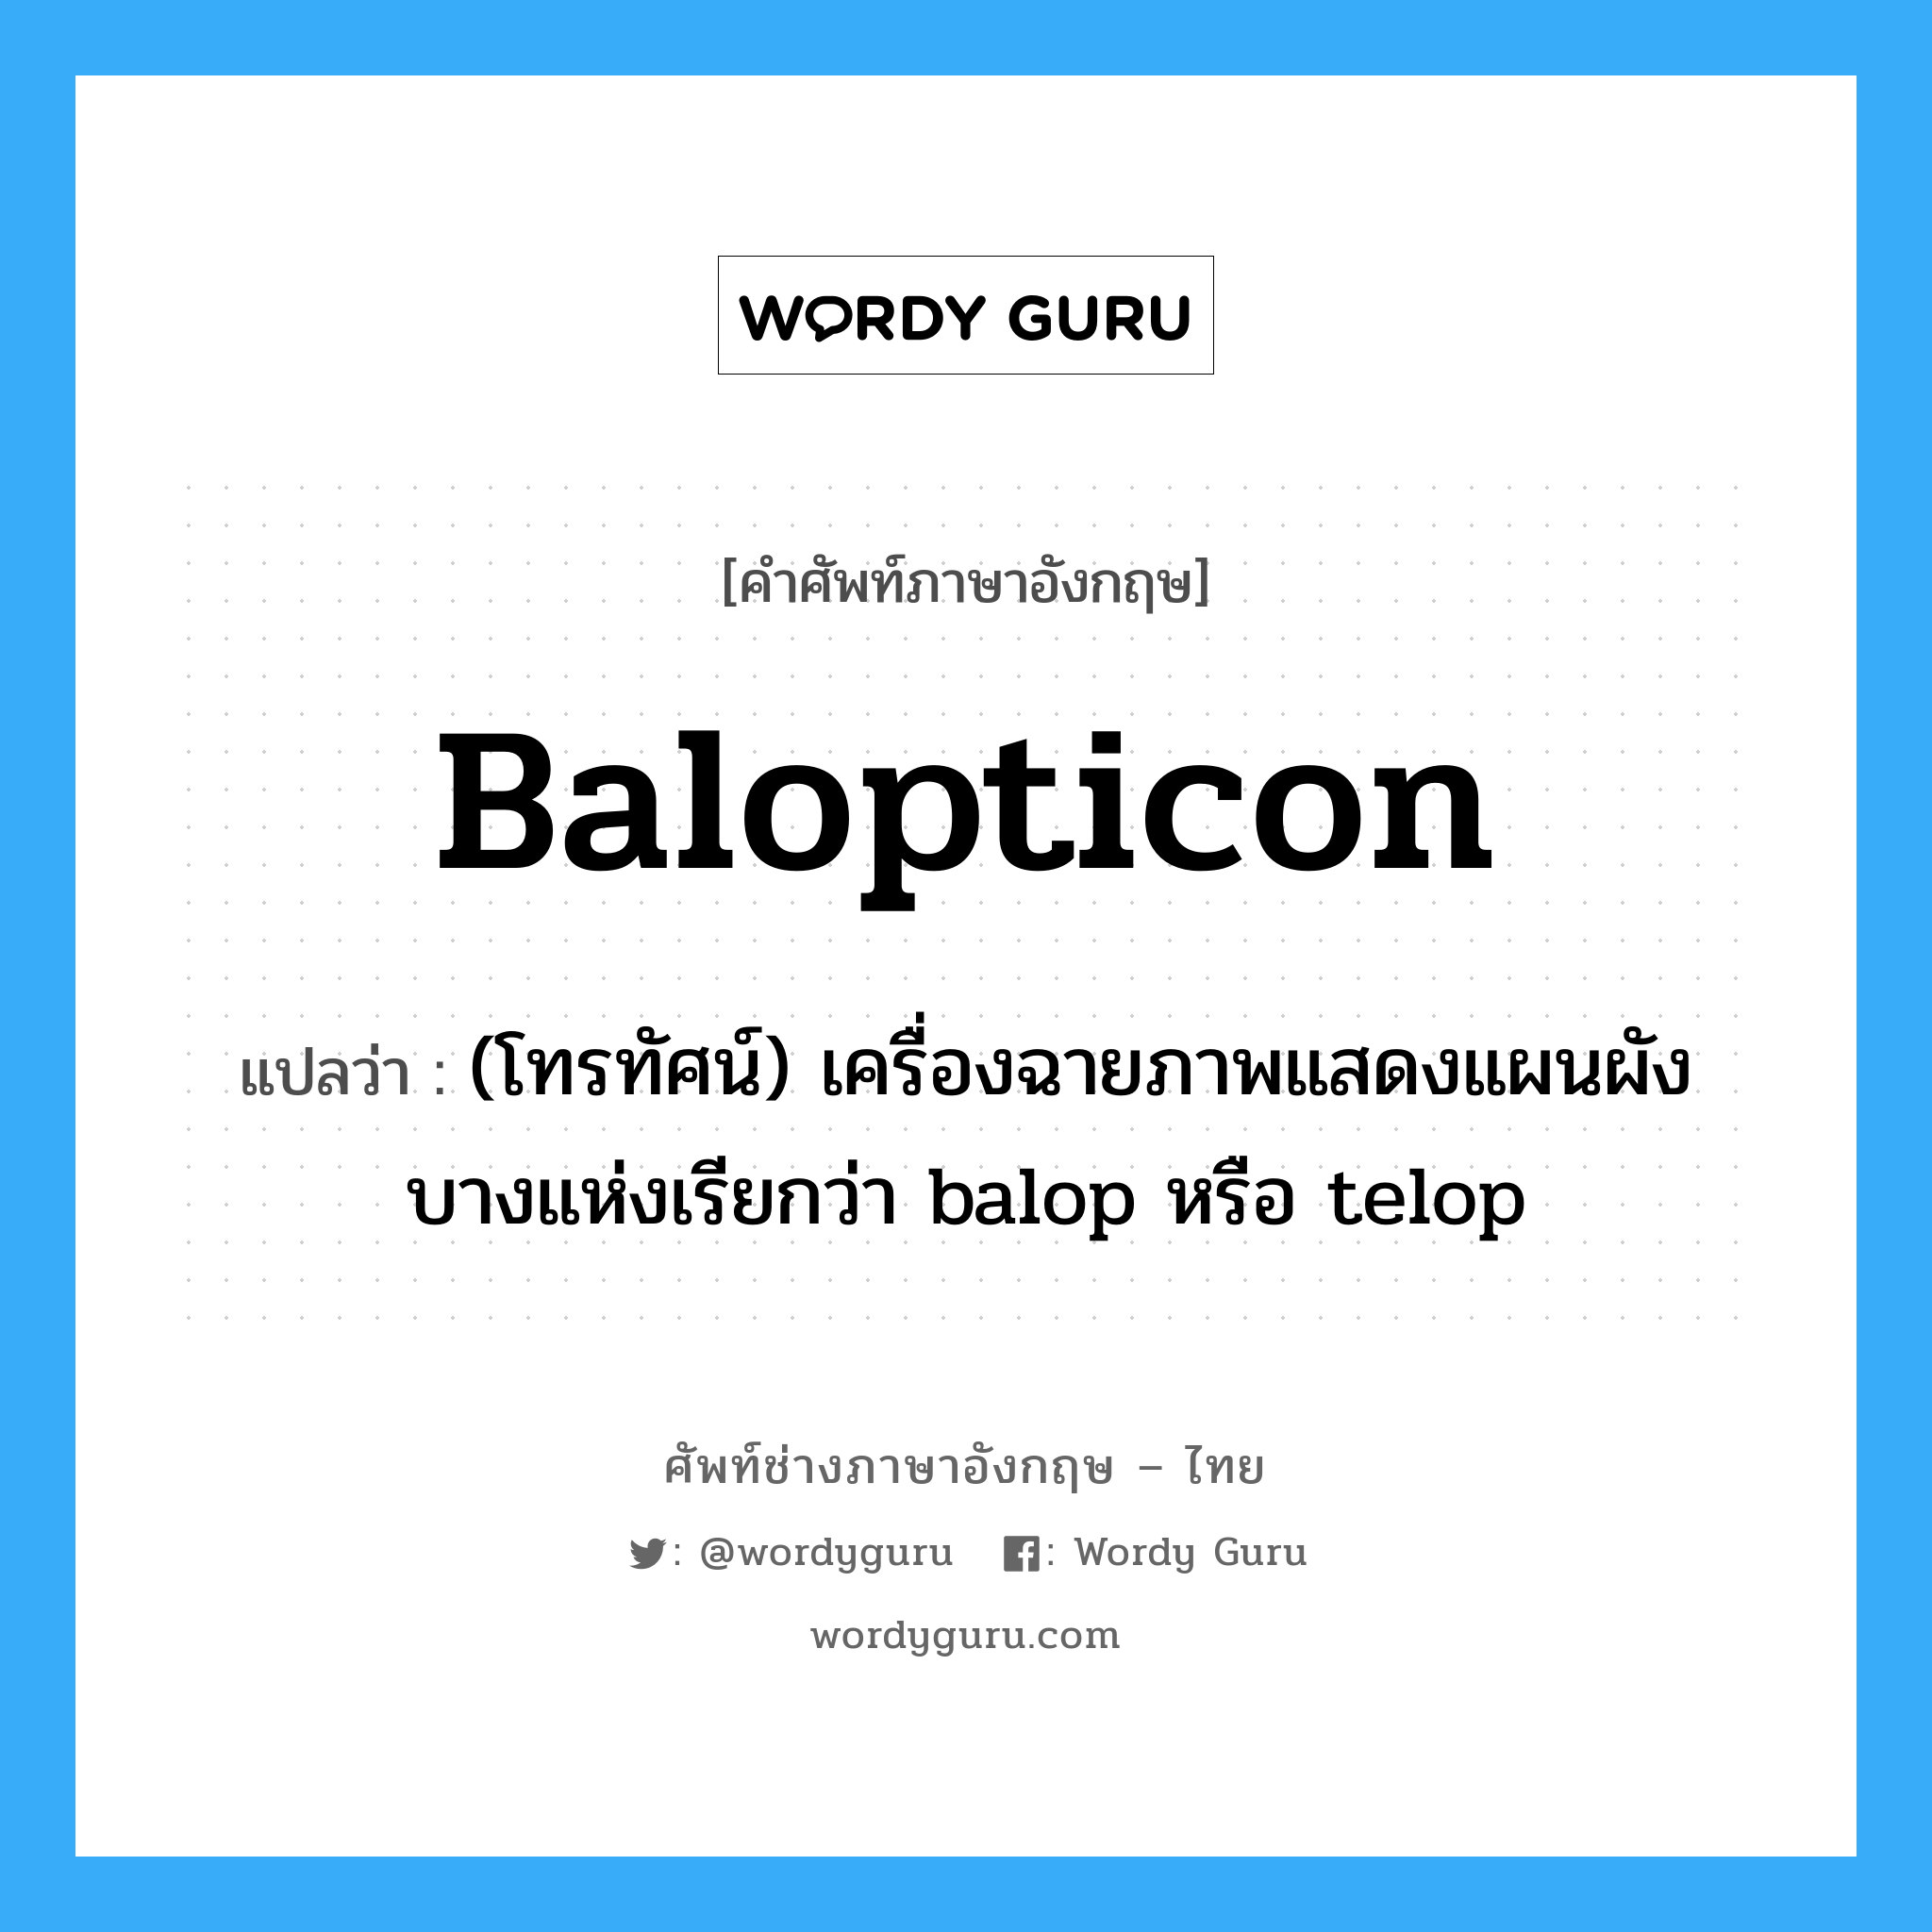 Balopticon แปลว่า?, คำศัพท์ช่างภาษาอังกฤษ - ไทย Balopticon คำศัพท์ภาษาอังกฤษ Balopticon แปลว่า (โทรทัศน์) เครื่องฉายภาพแสดงแผนผัง บางแห่งเรียกว่า balop หรือ telop